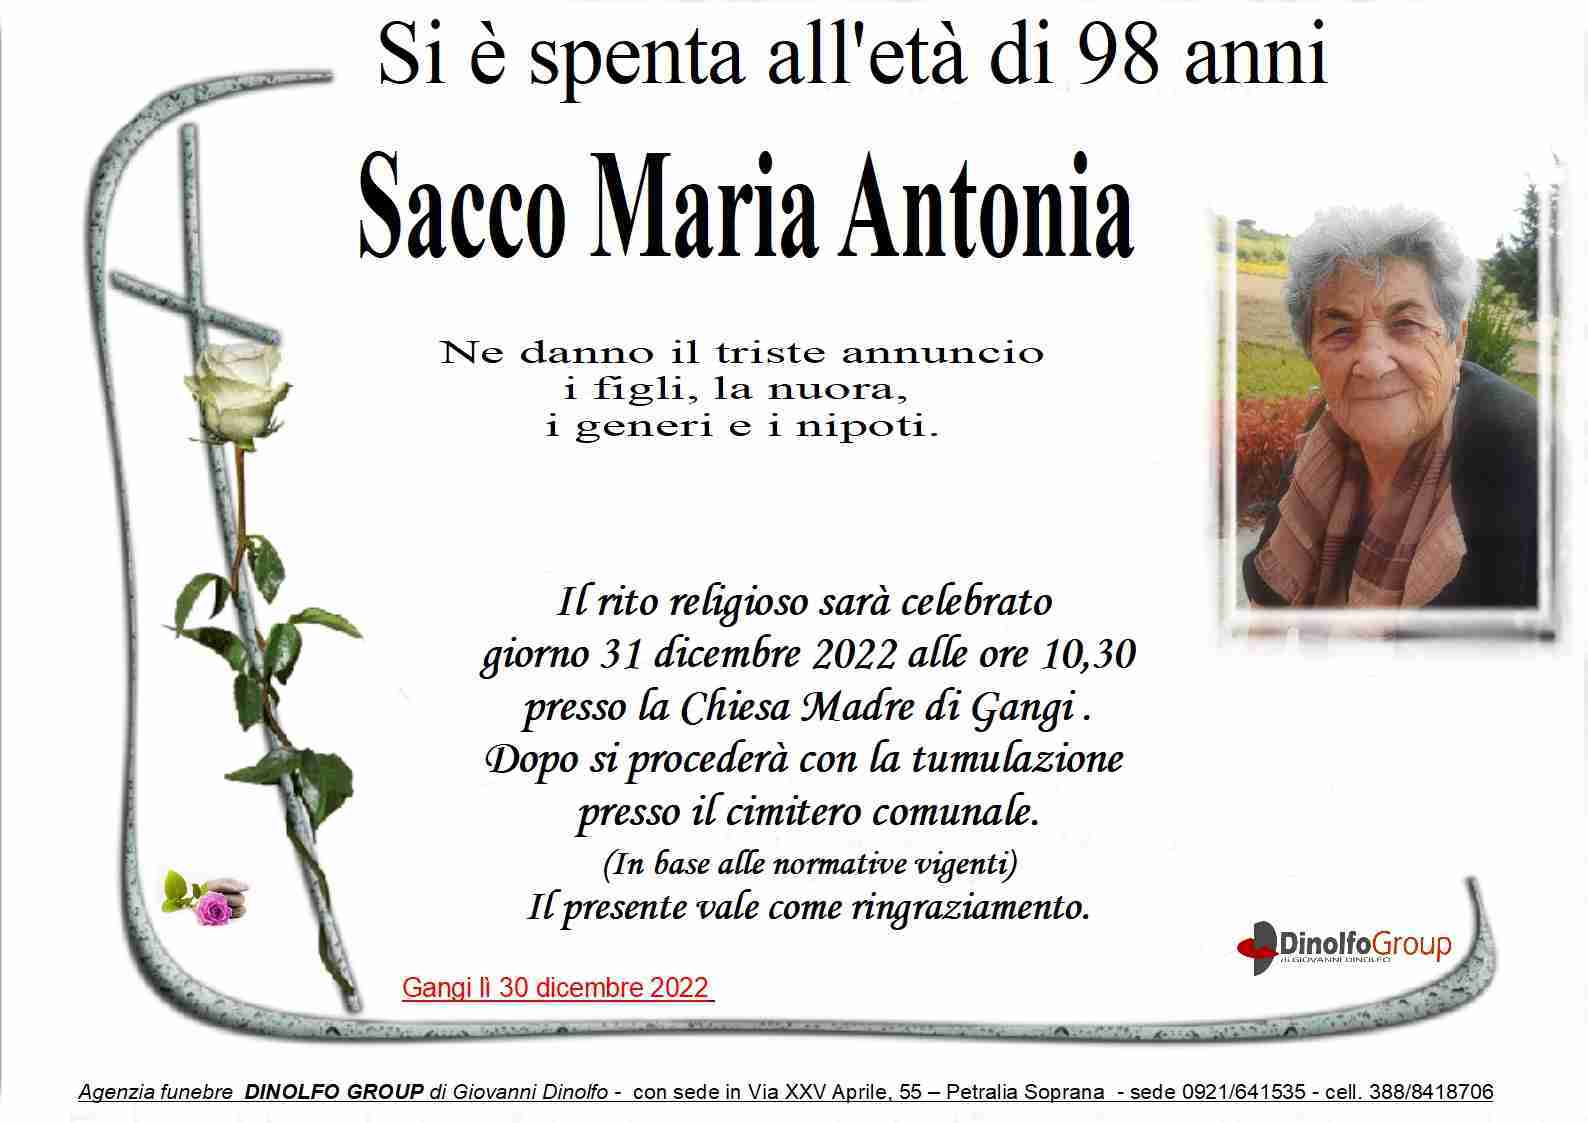 Maria Antonia Sacco